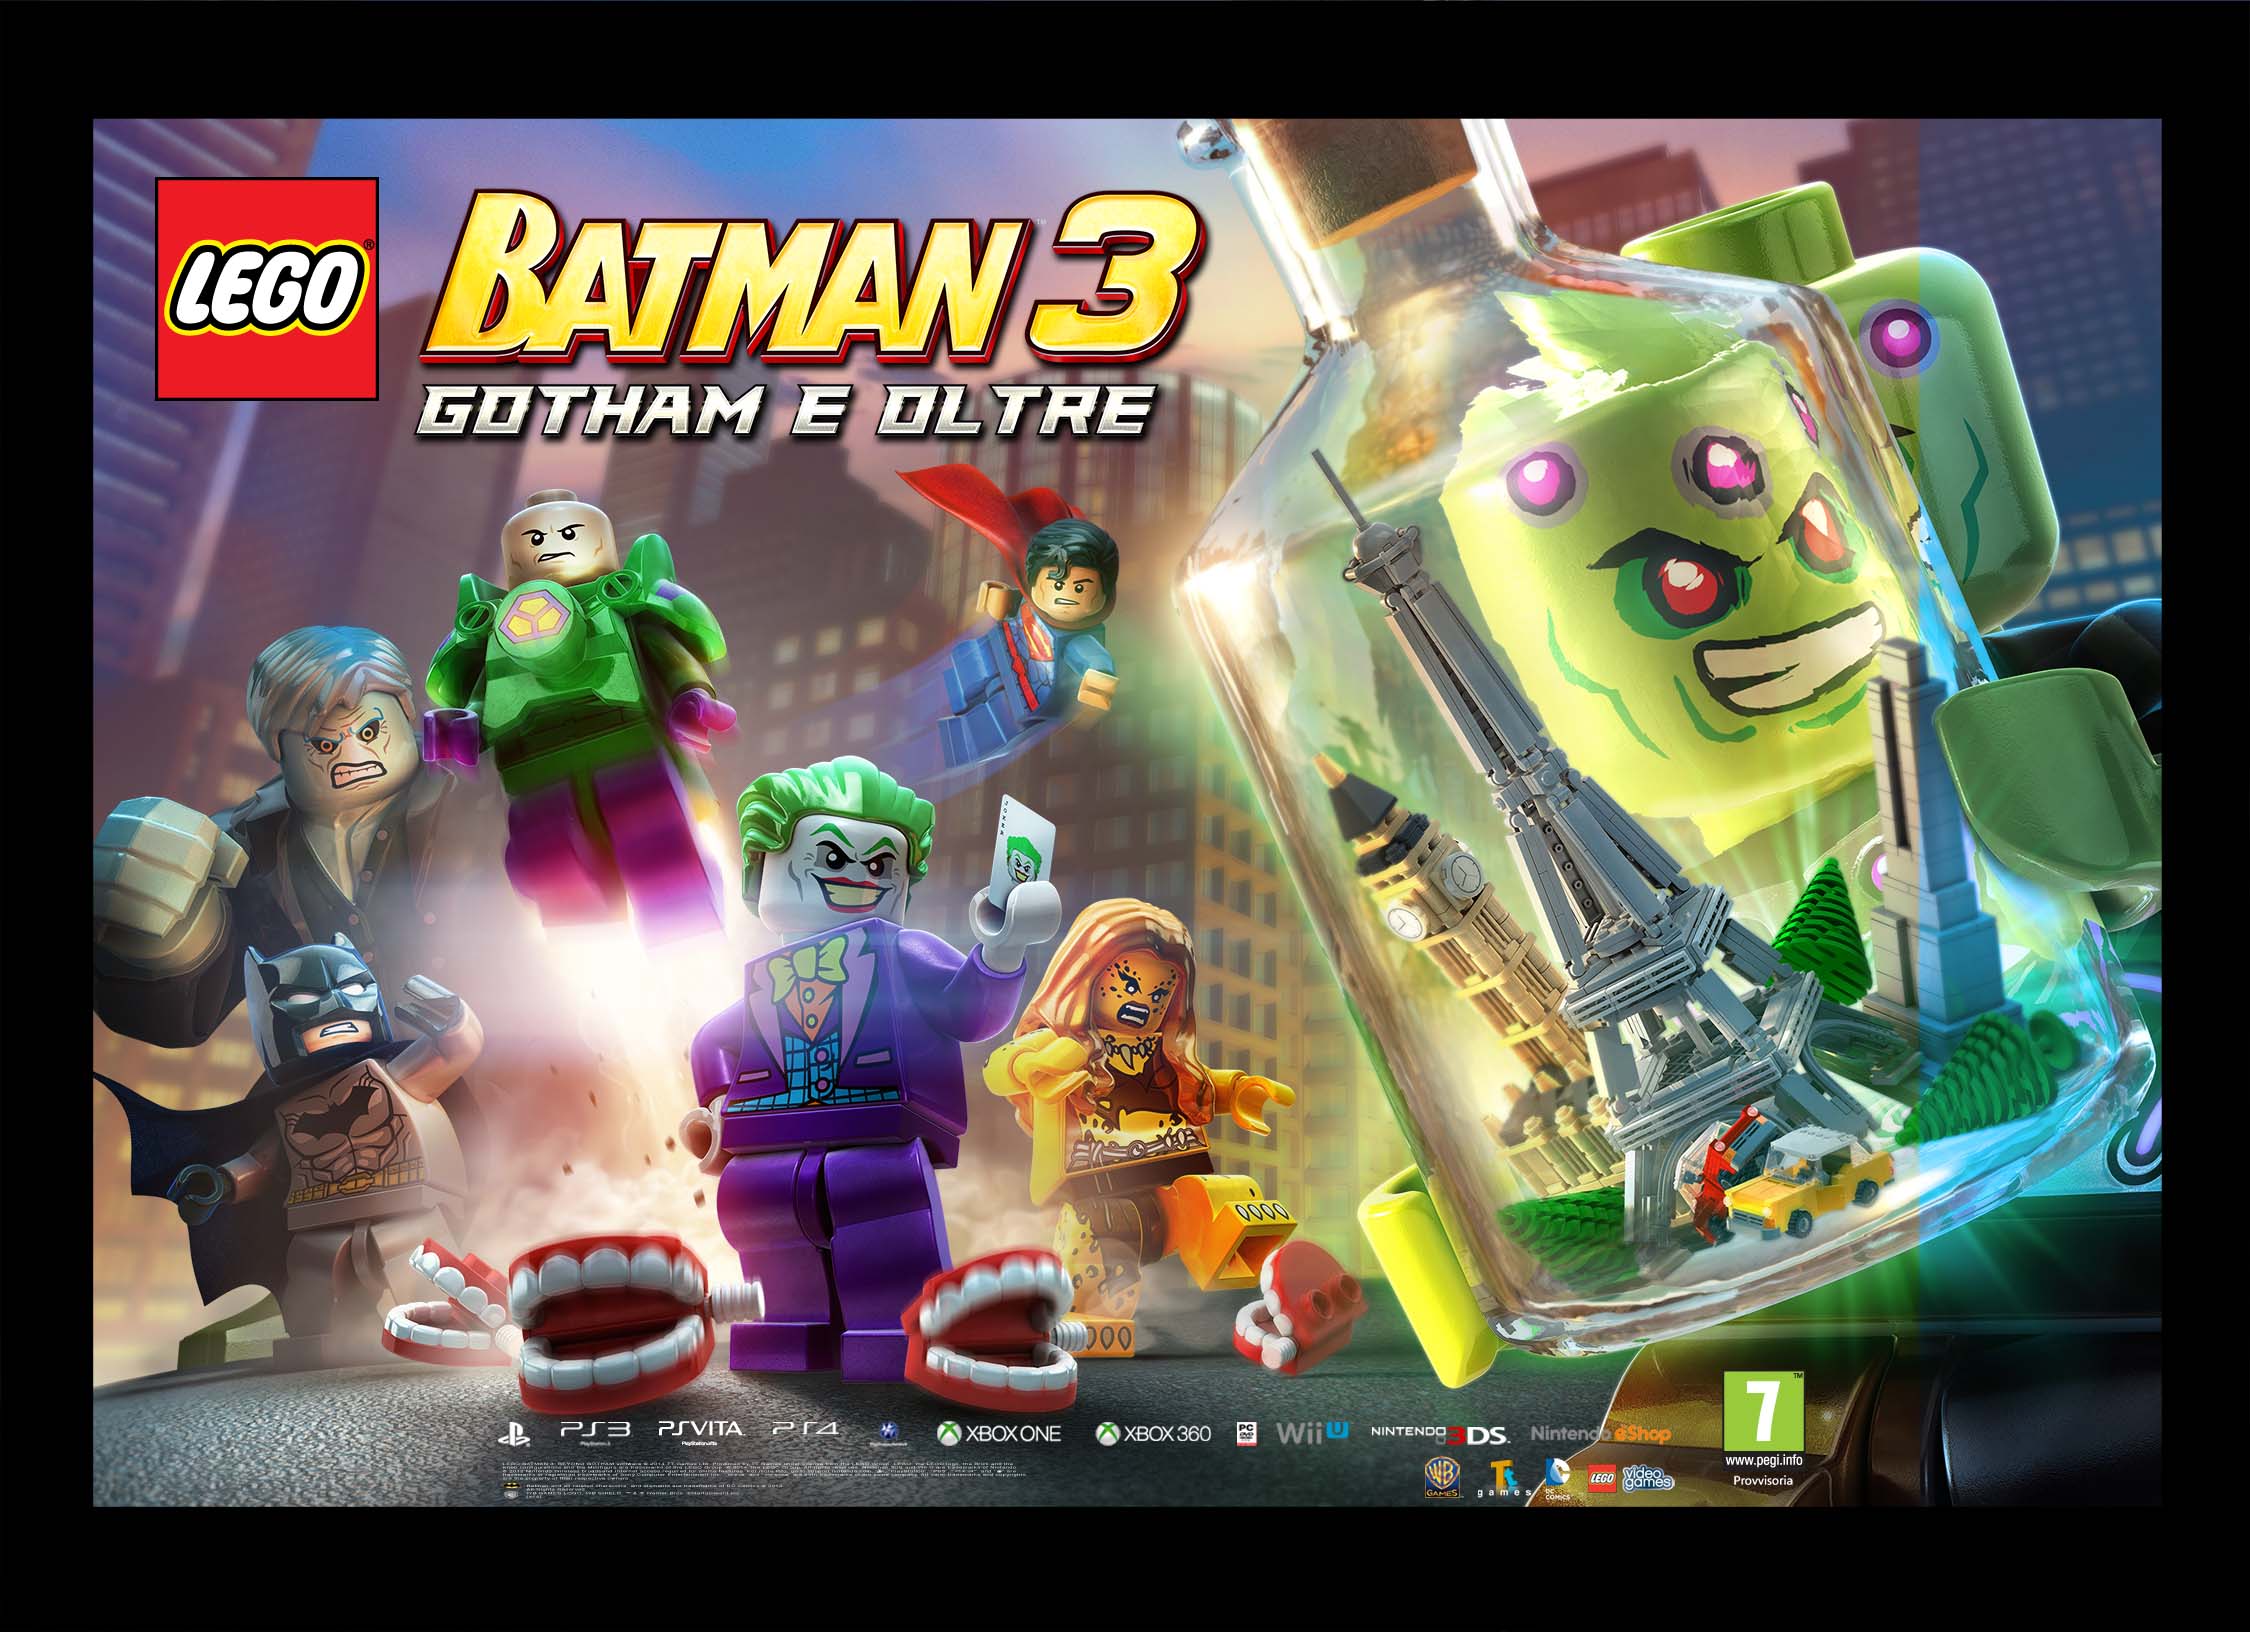 LEGO Batman 3: Gotham E Oltre, un nuovo video